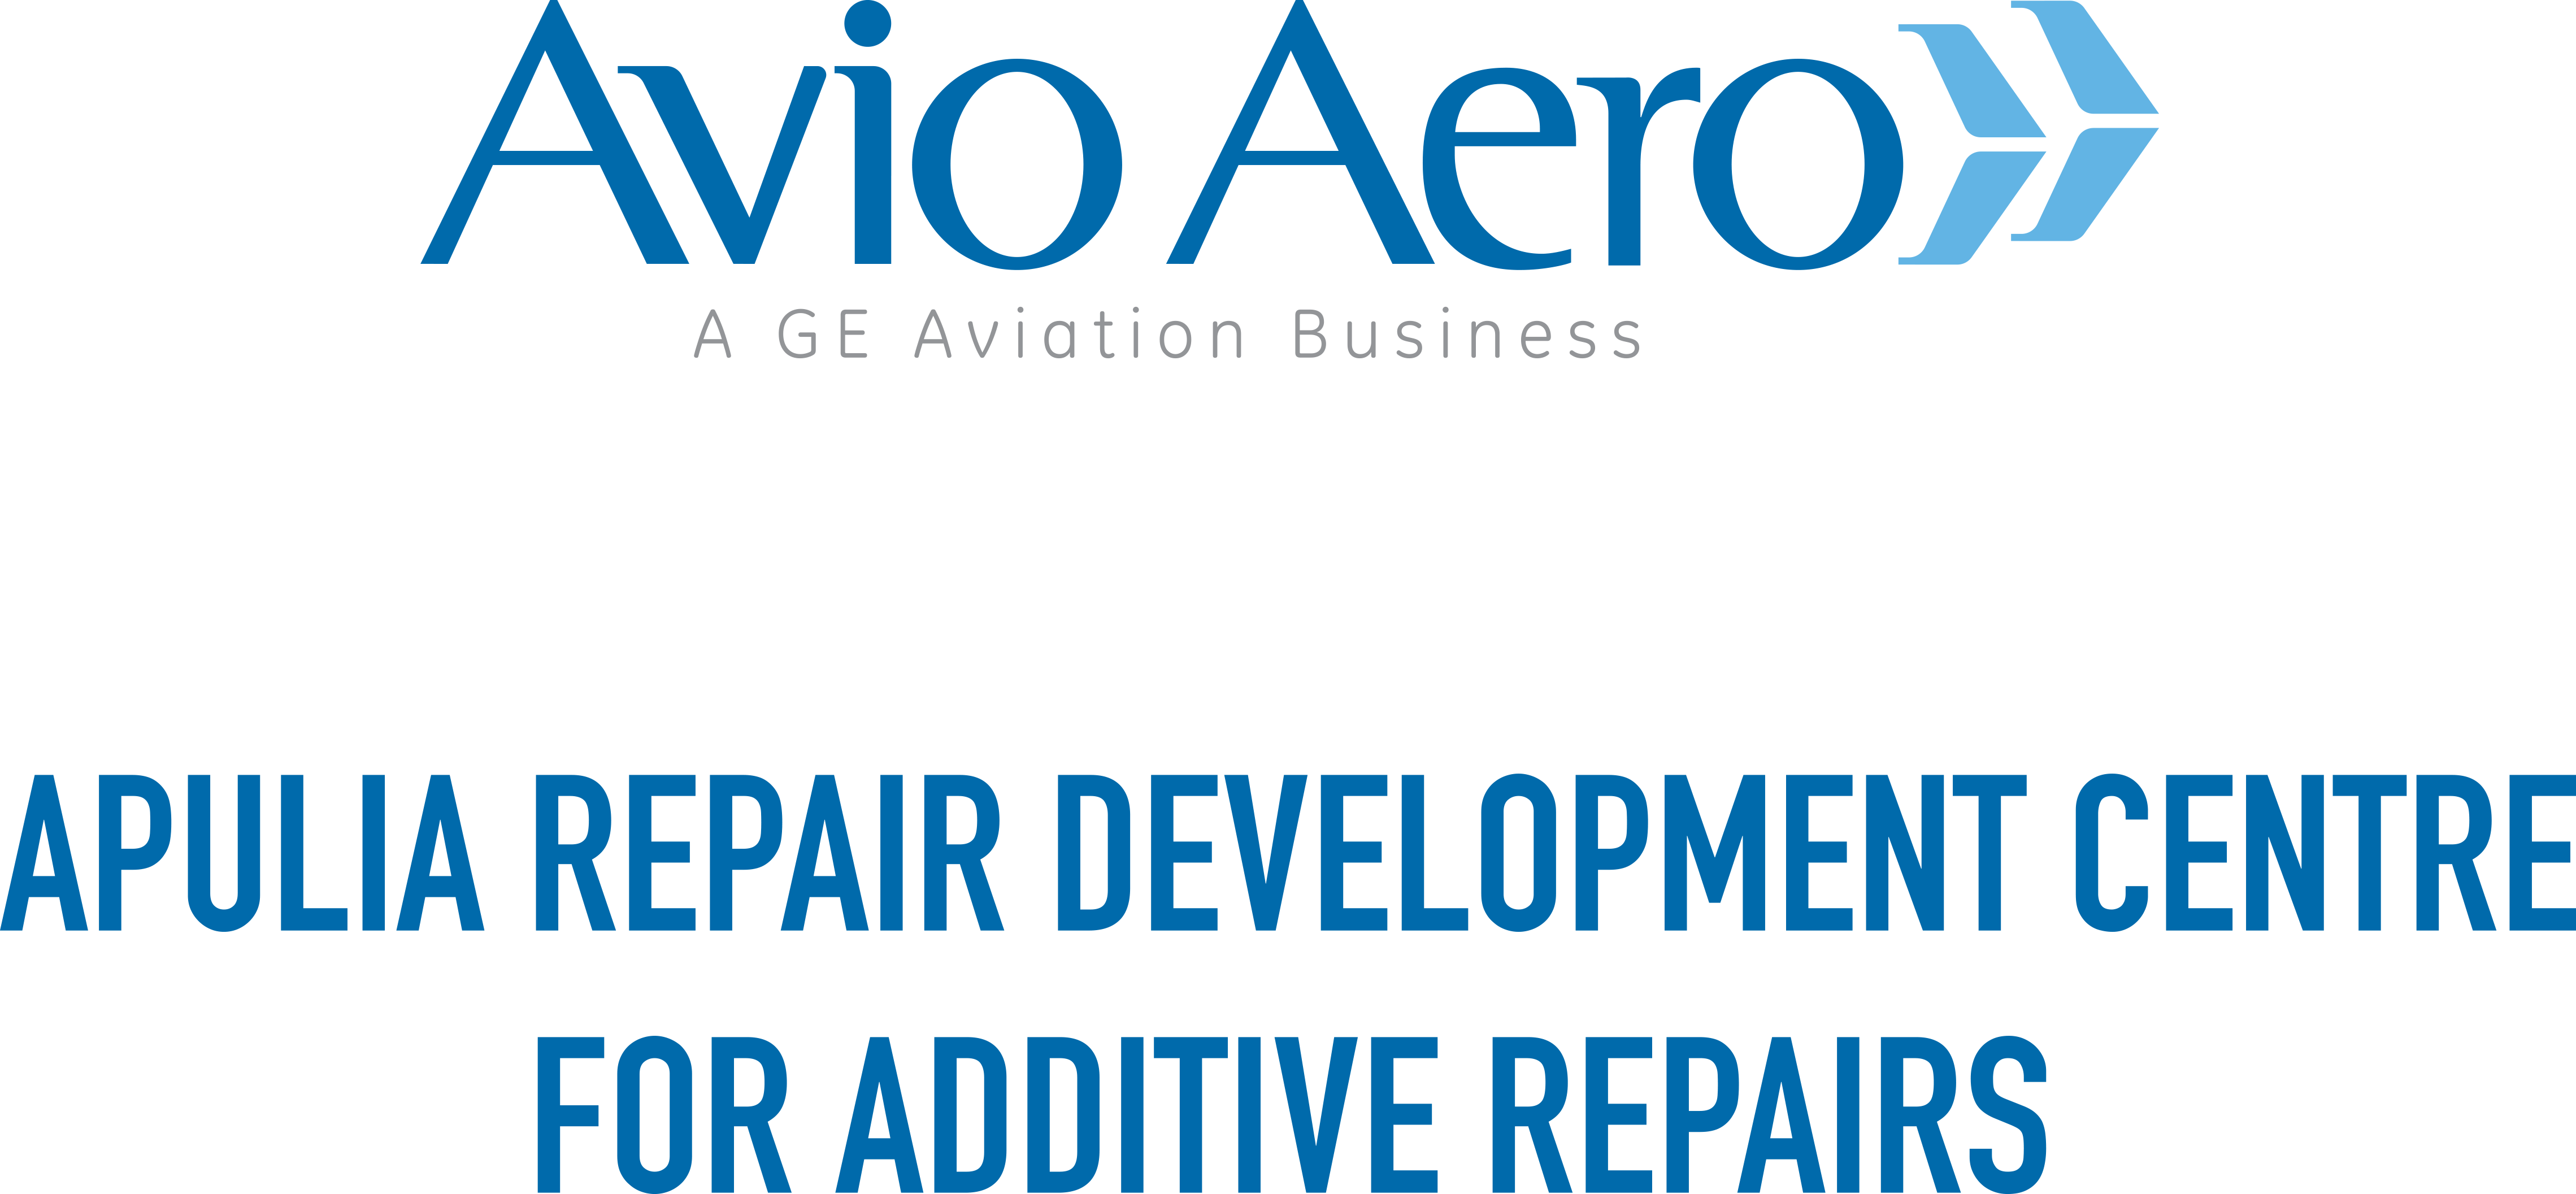 Apulia Repair Development Center for Additive Repairs logo